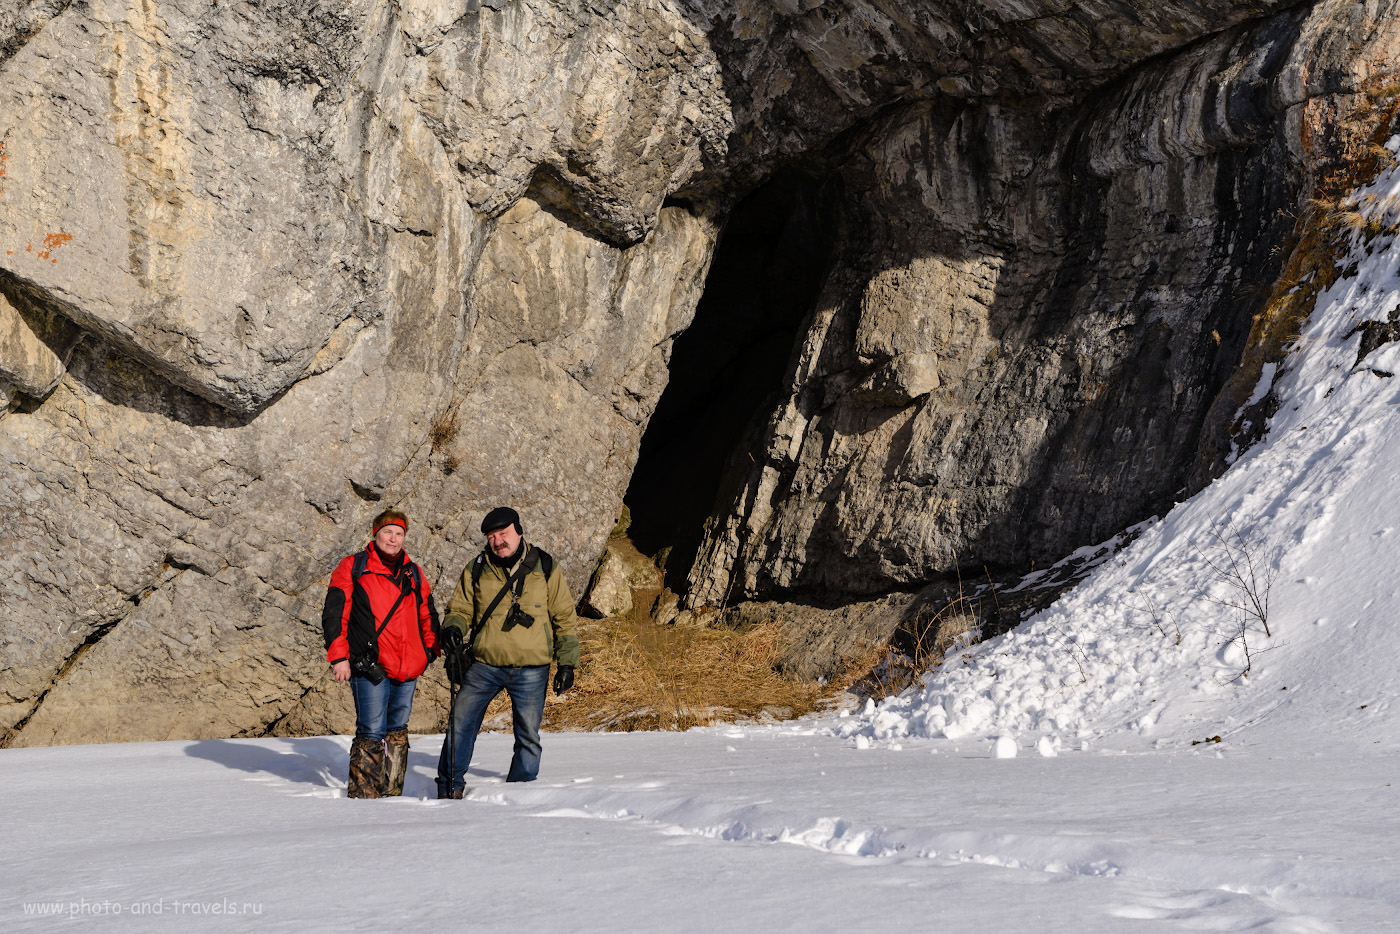 Фотография 34. Так выглядит вход в Зотинскую пещеру. 1/160, -0.33, 8.0, 100, 60.